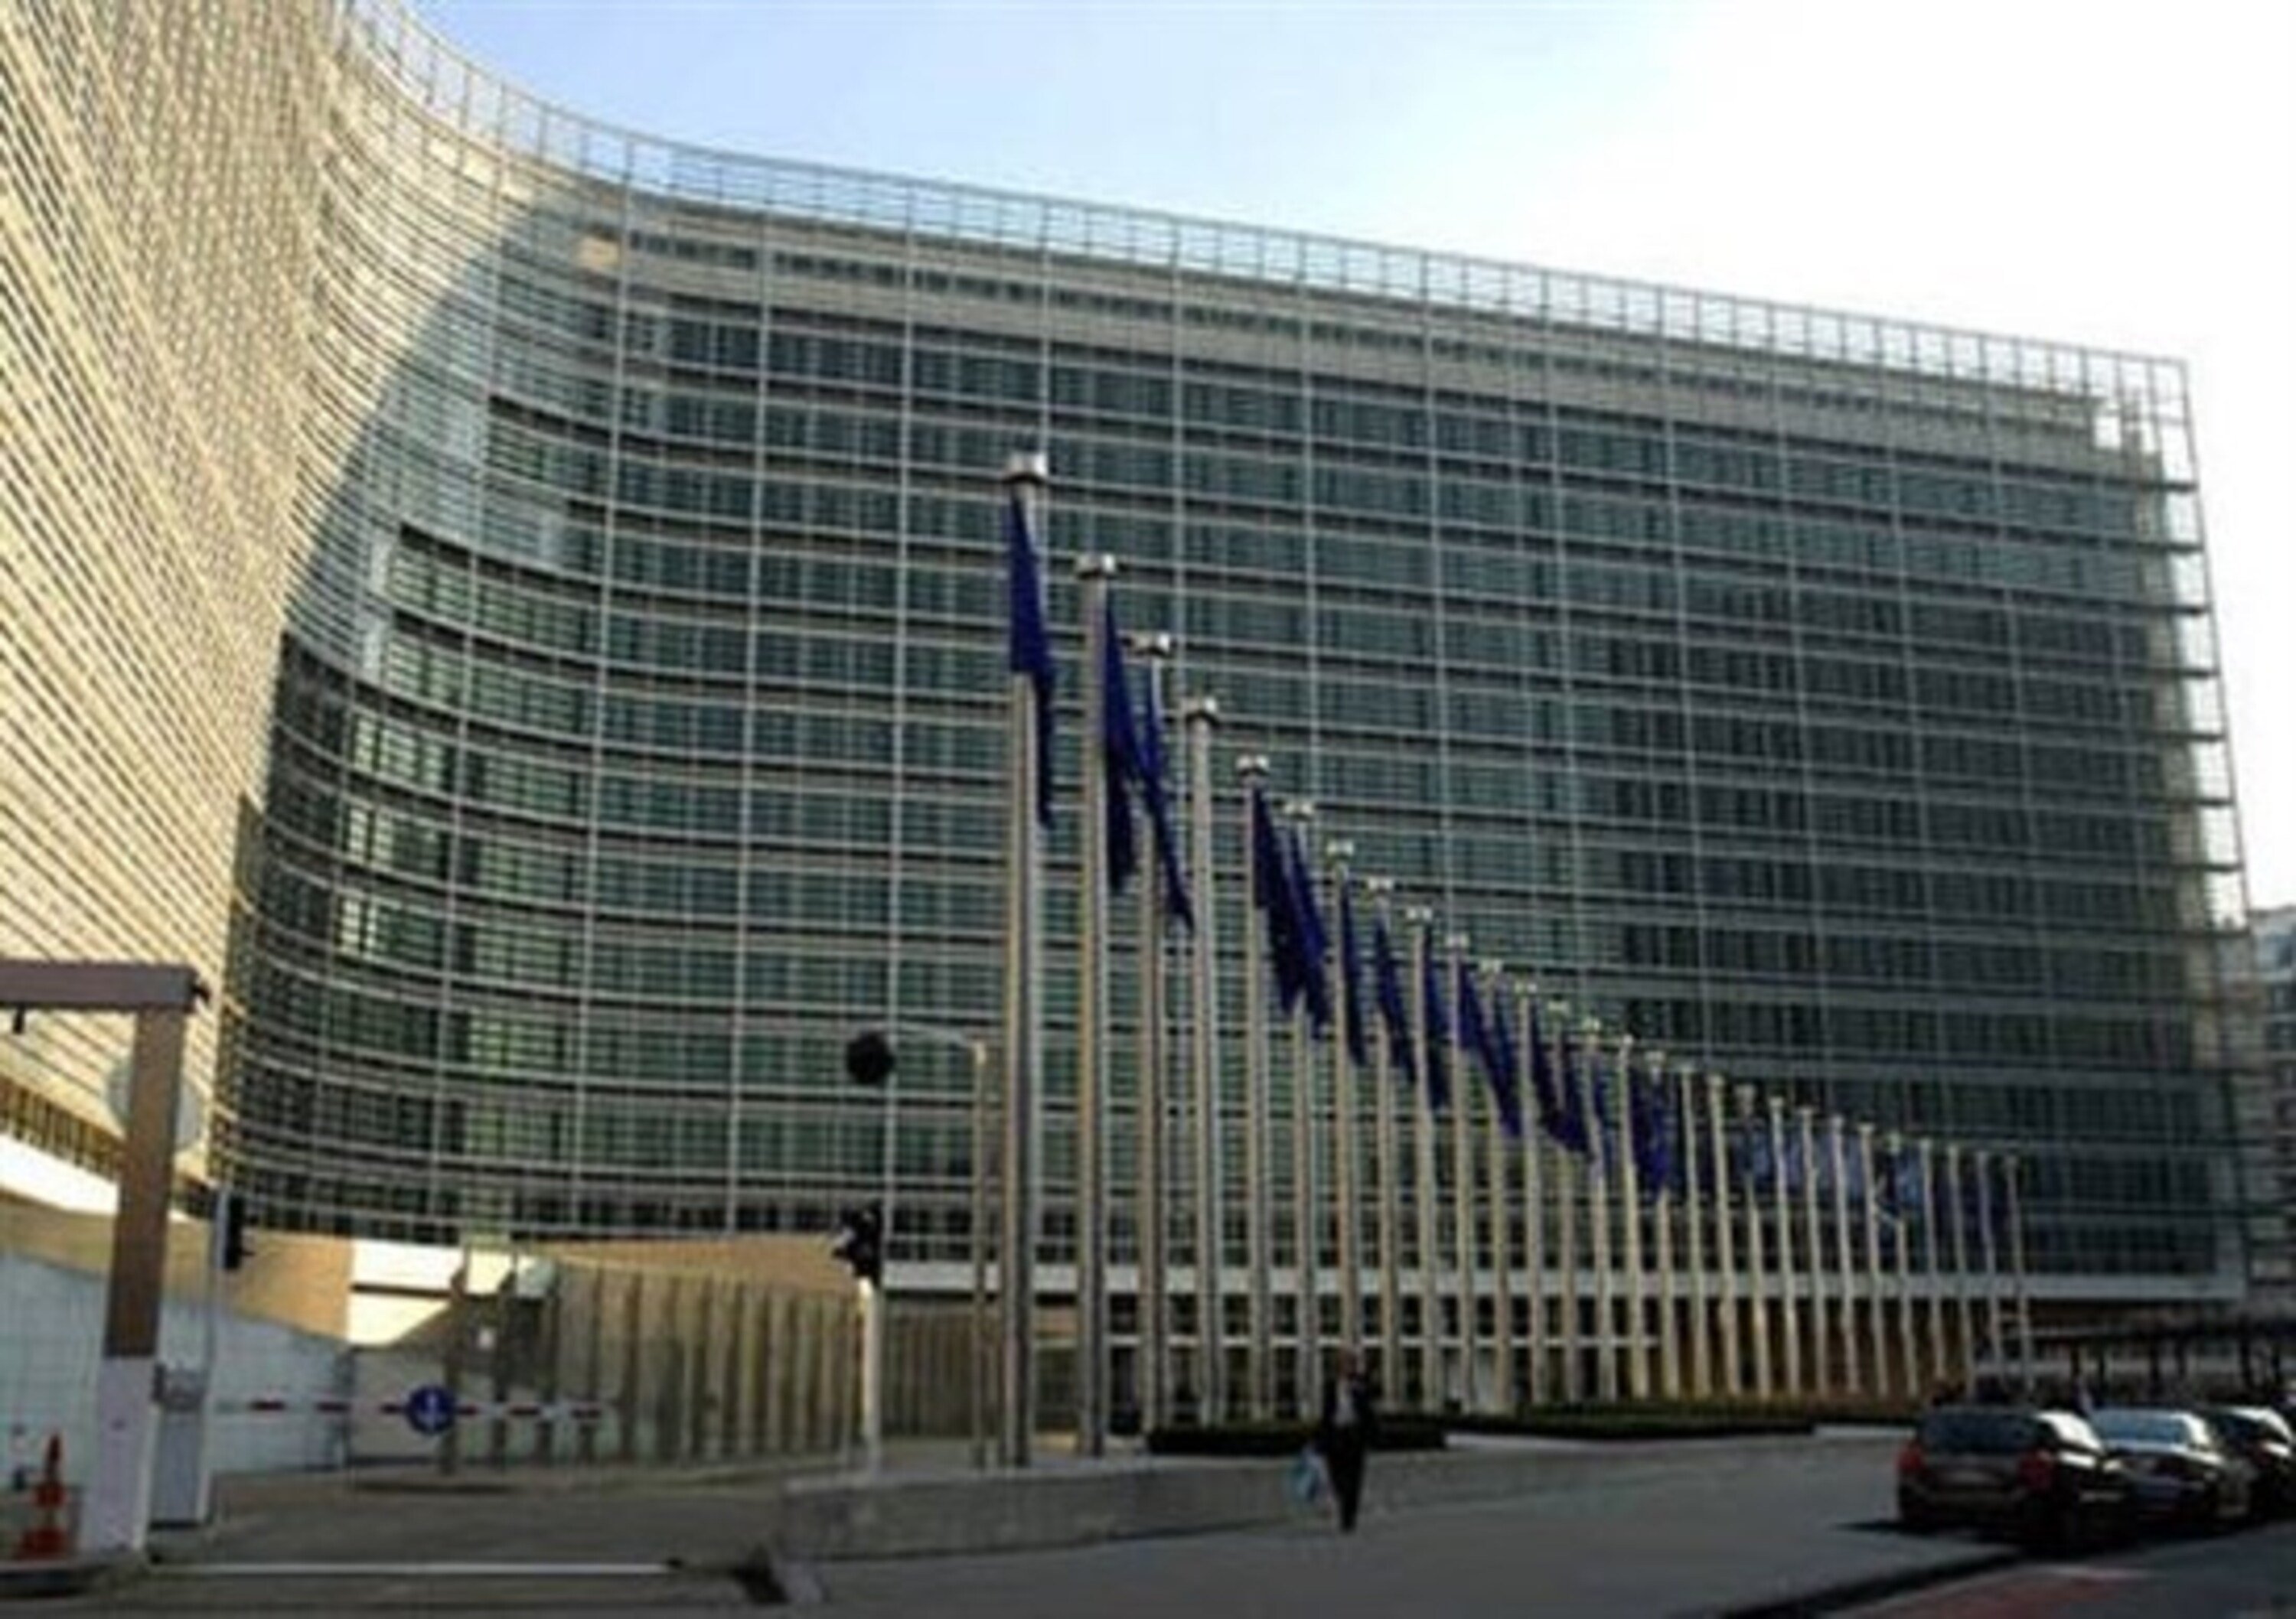 Commissione UE, Italia deferita alla Corte di Giustizia per livelli Pm10